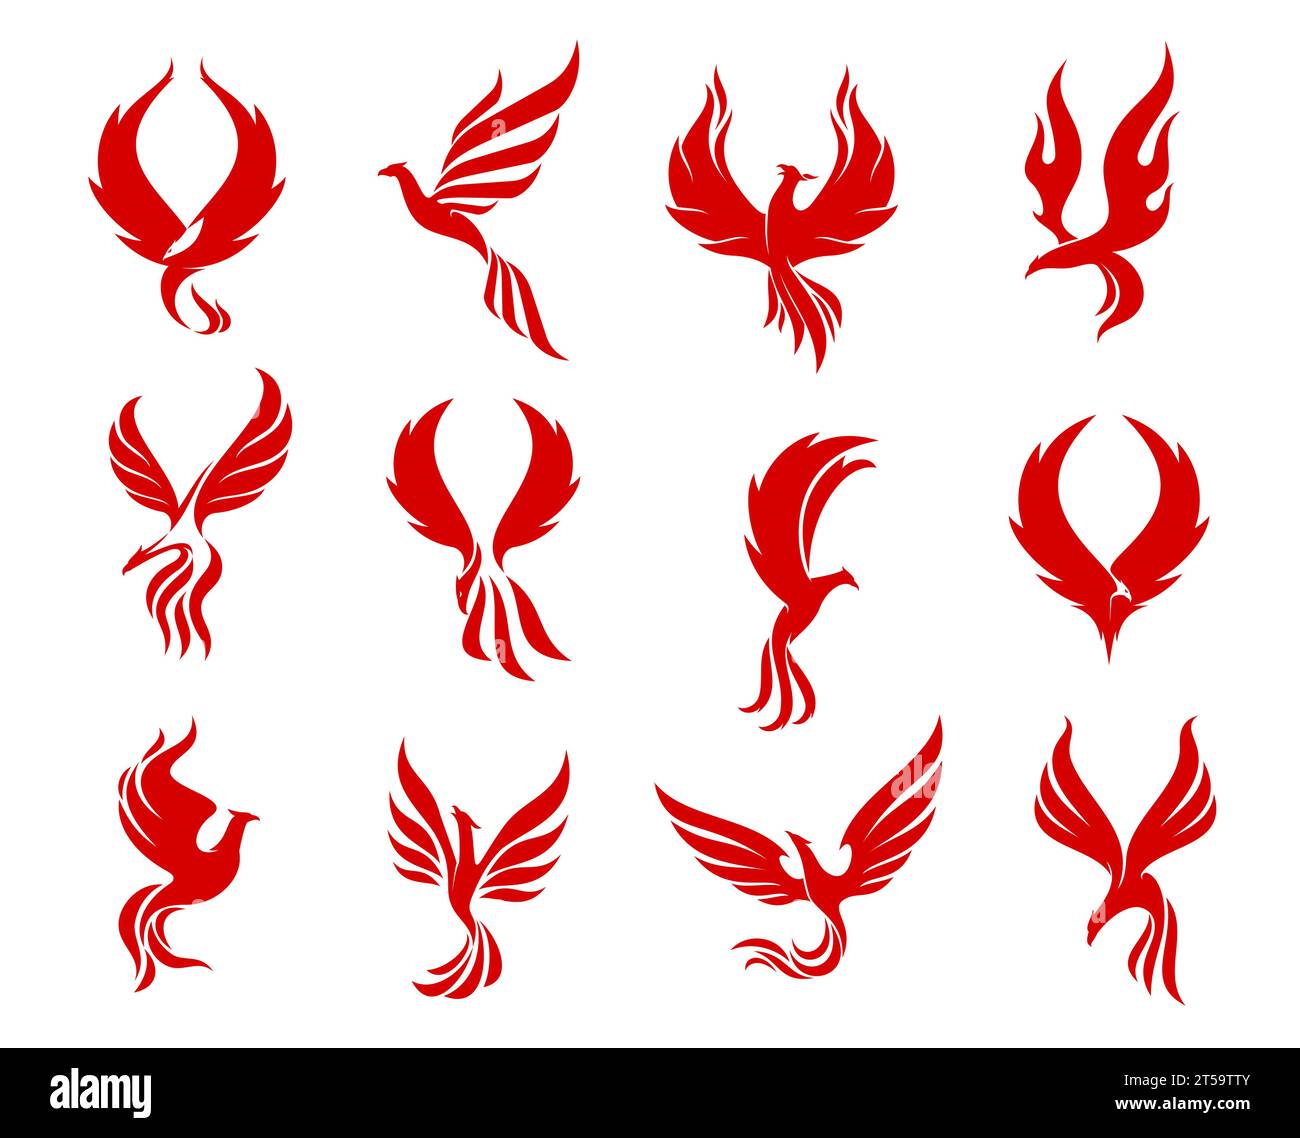 Icone degli uccelli Red phoenix, firebird che vola sulle ali di fuoco, emblemi aziendali vettoriali. Phoenix o simboli creativi della silhouette di falco, falco e aquila per il marchio di moda o boutique di lusso Illustrazione Vettoriale